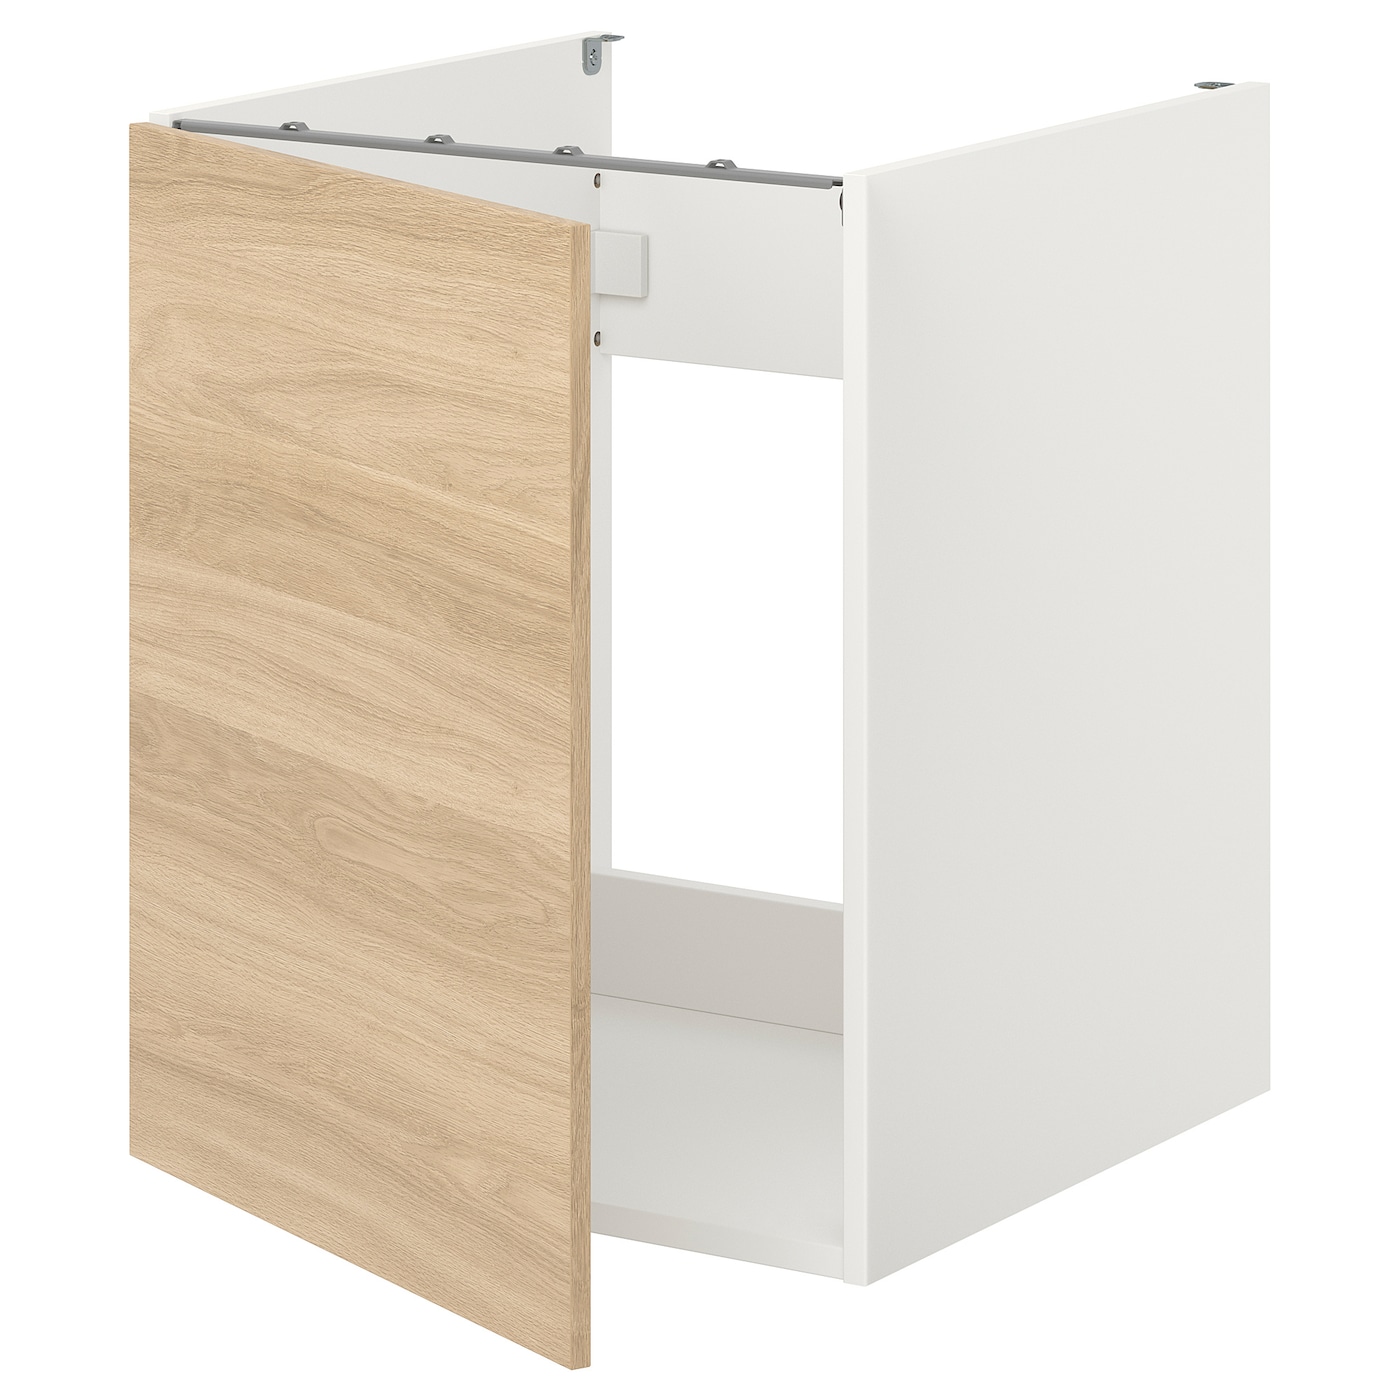 Шкаф для раковины - IKEA ENHET, 75x62x60см, белый/светло-коричневый, ЭНХЕТ ИКЕА